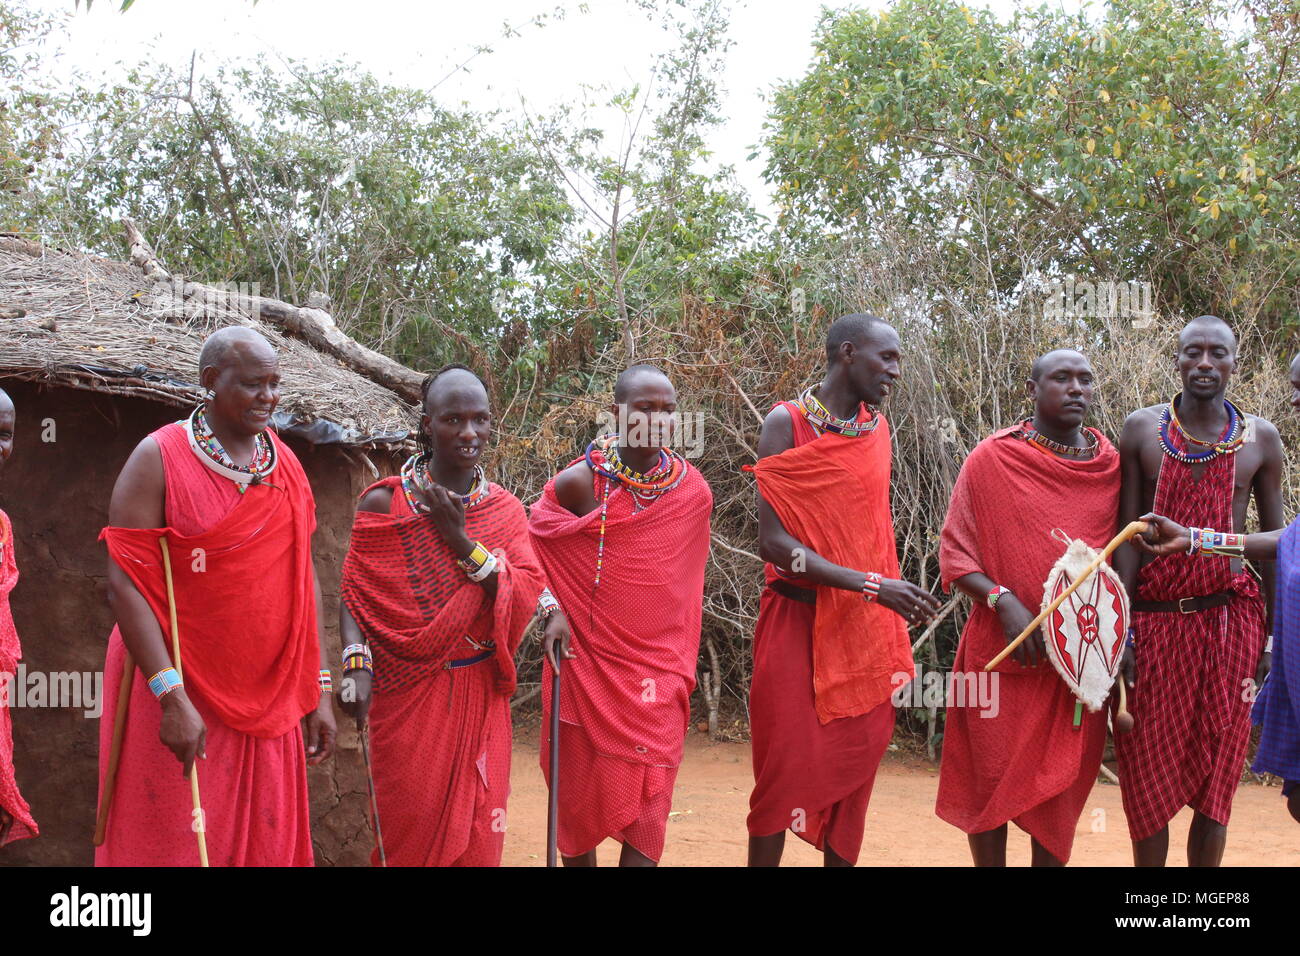 Les hommes dans l'avant-plan de la tribu Masai africains, vêtus de leurs costumes rouges typiques, de lances et de boucliers, danse en saut rituel Banque D'Images